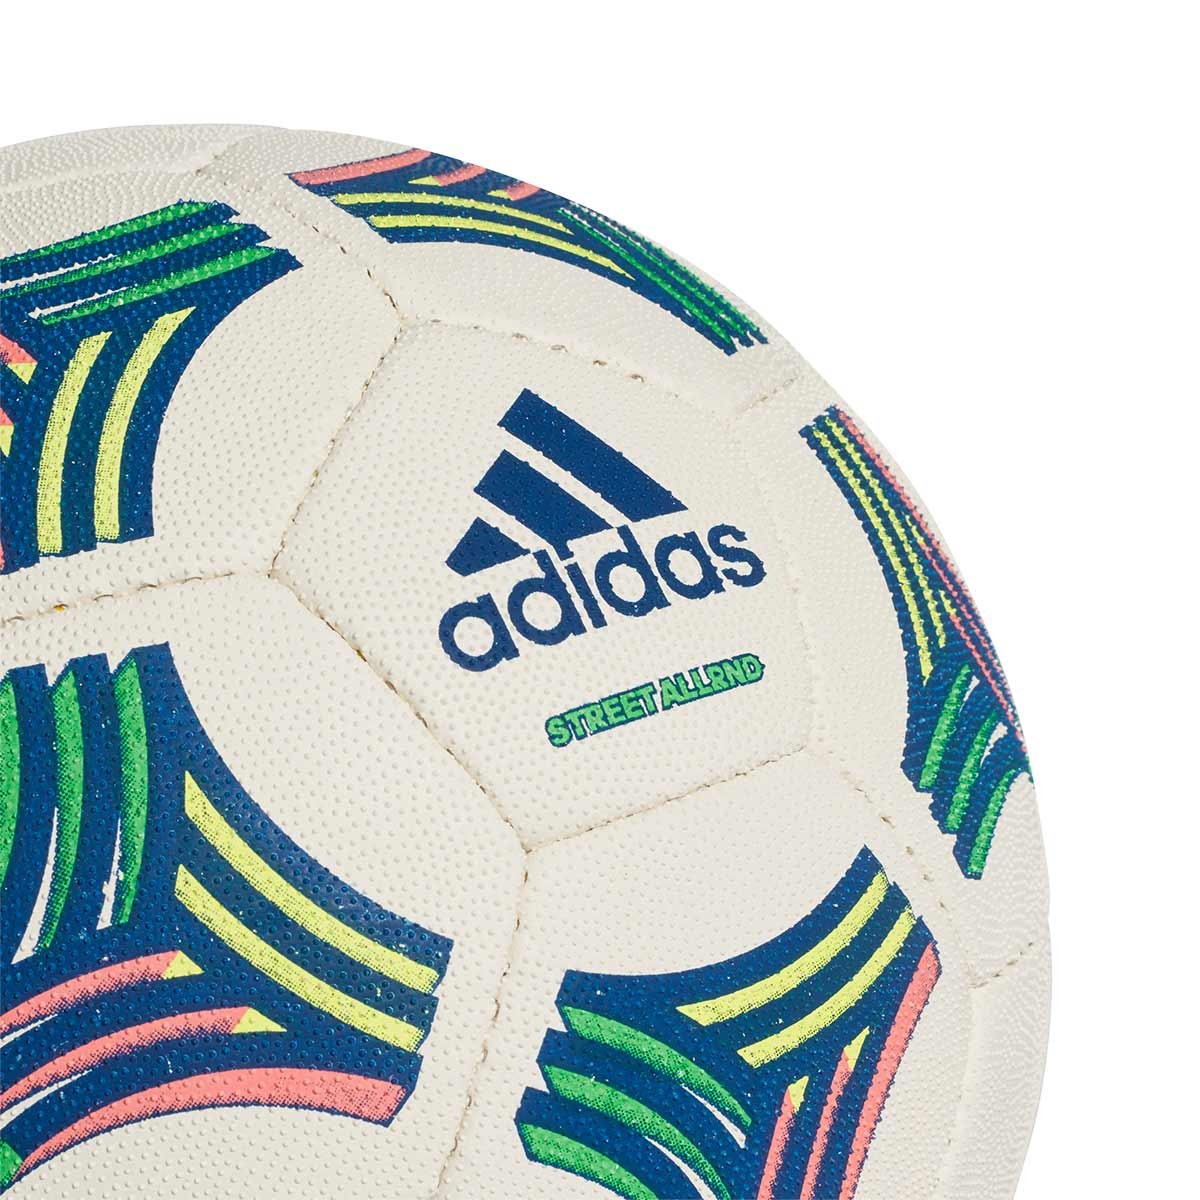 Ball adidas Tango Allround White-Bold blue - Football store Fútbol Emotion